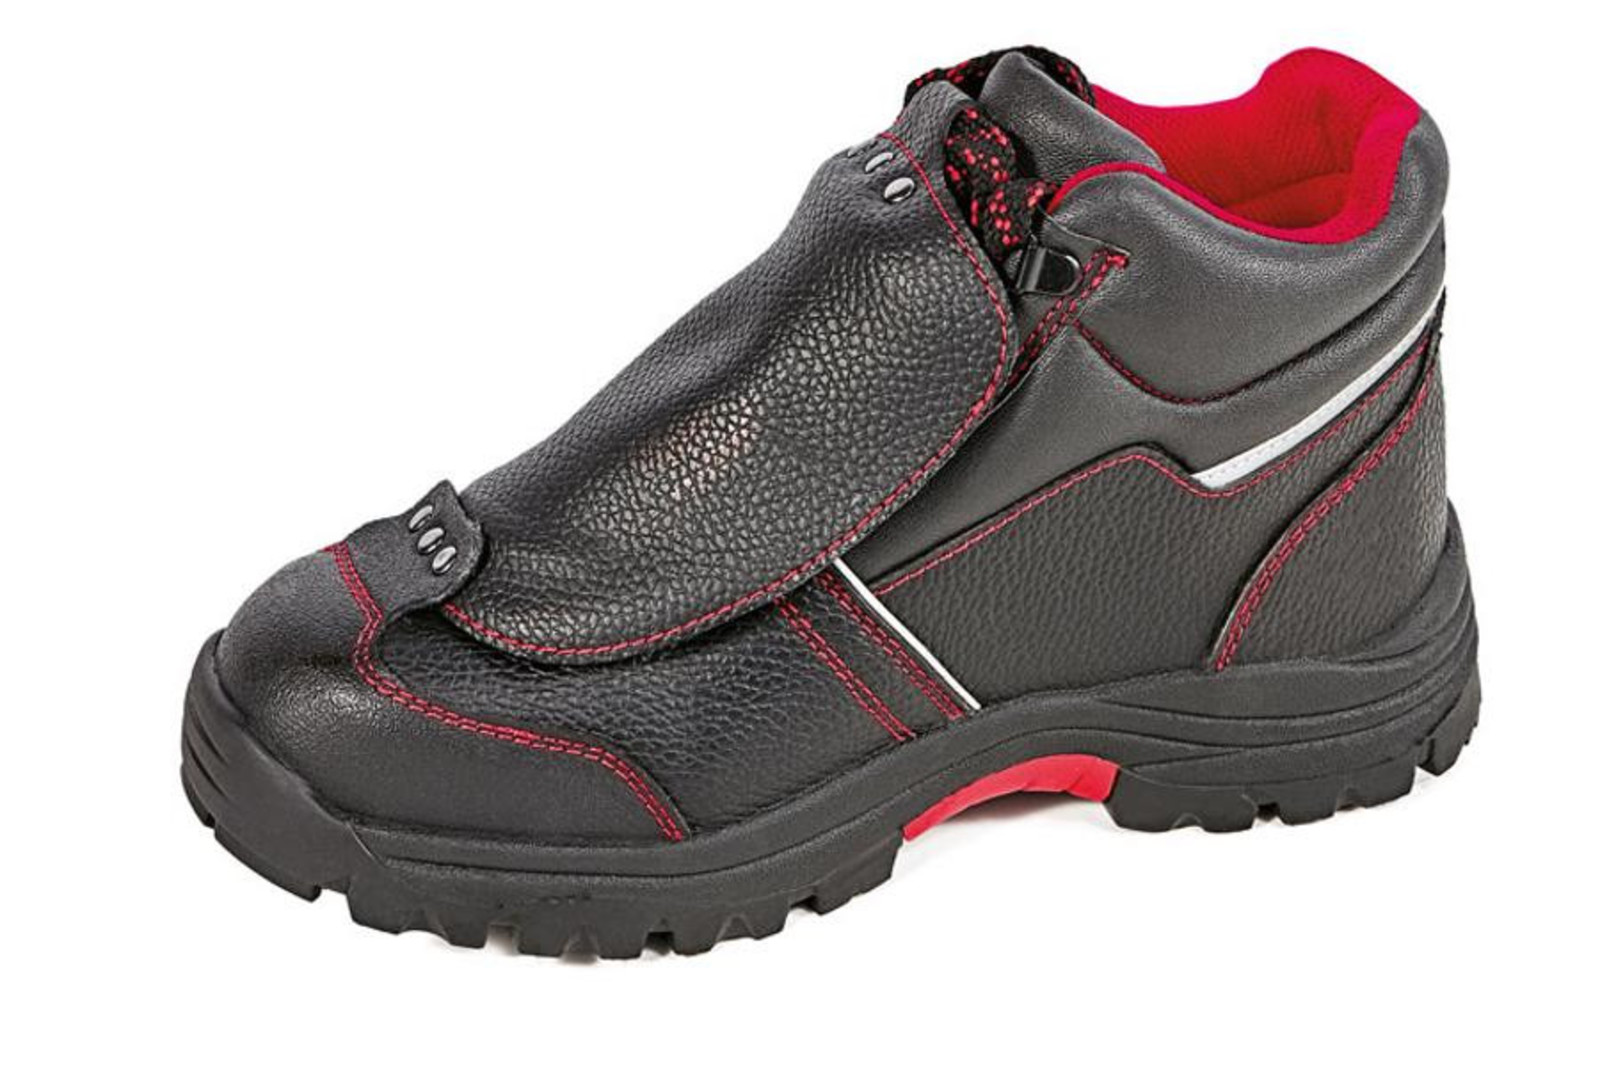 Bezpečnostná členková obuv Cerva Steeler Metatarsal S3 HRO M SRA  - veľkosť: 41, farba: čierna